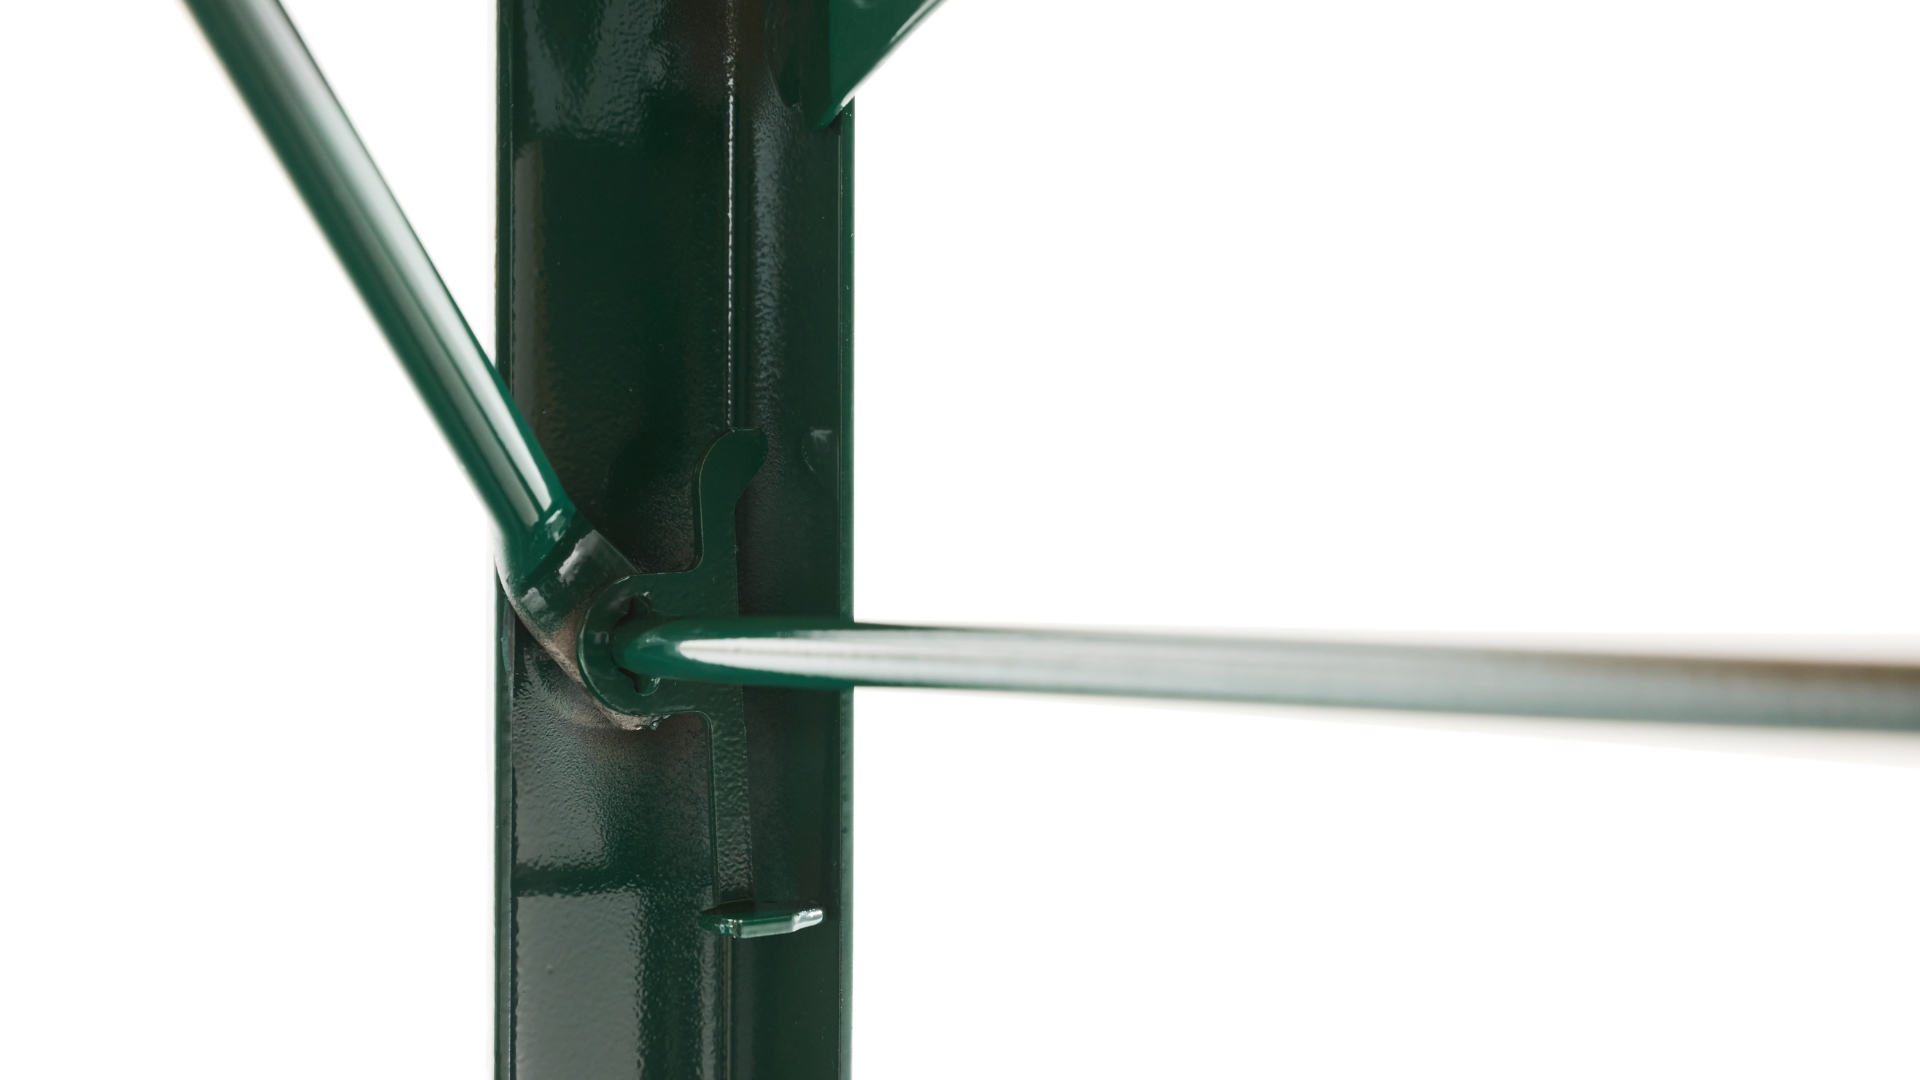 Grünes Untergestell der Bierzeltgarnitur mit Fokus auf den Bügelraster, der für Stabilität des Bügels beim Anheben der Garnitur  im geschlossenen Zustand sorgt.